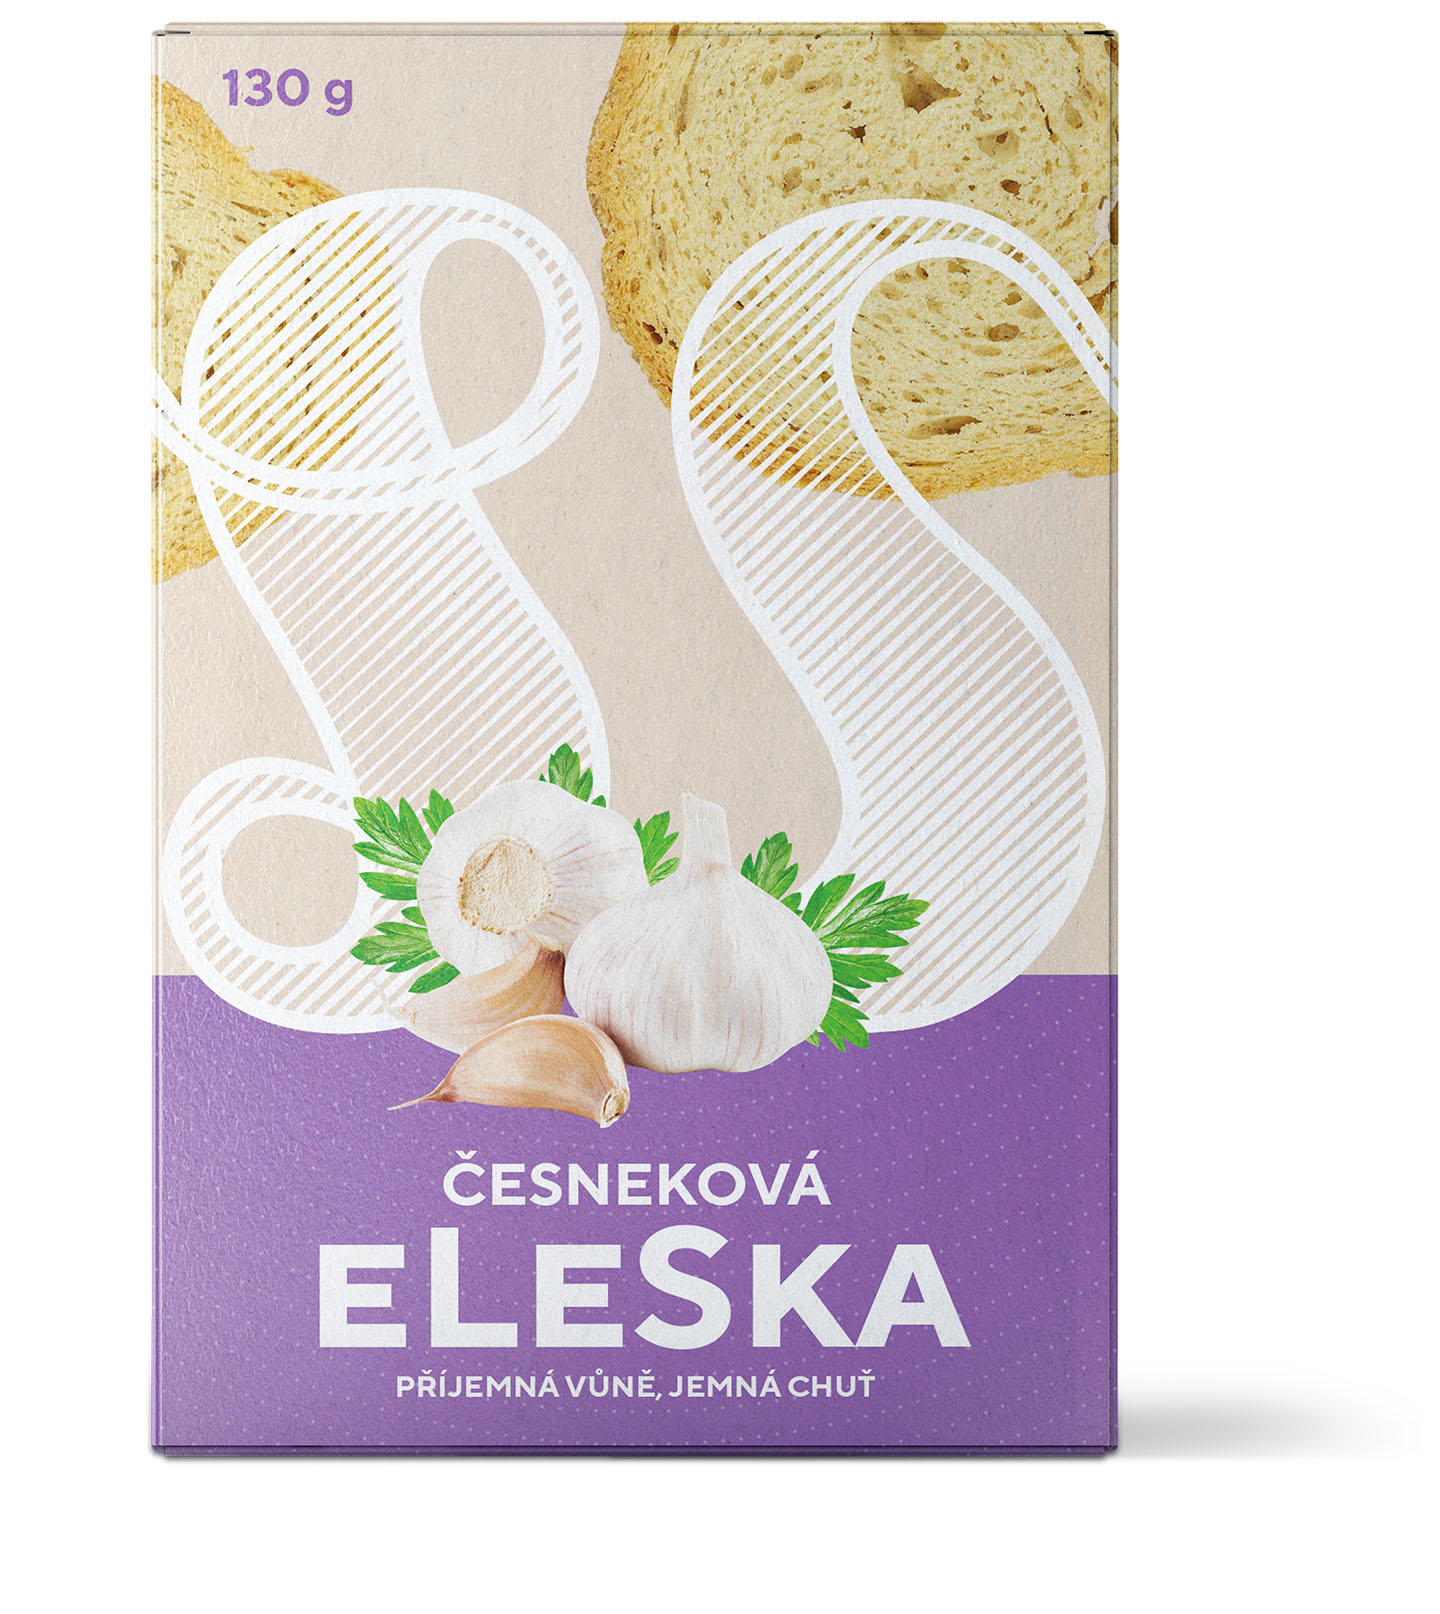 Česneková eLeSka 